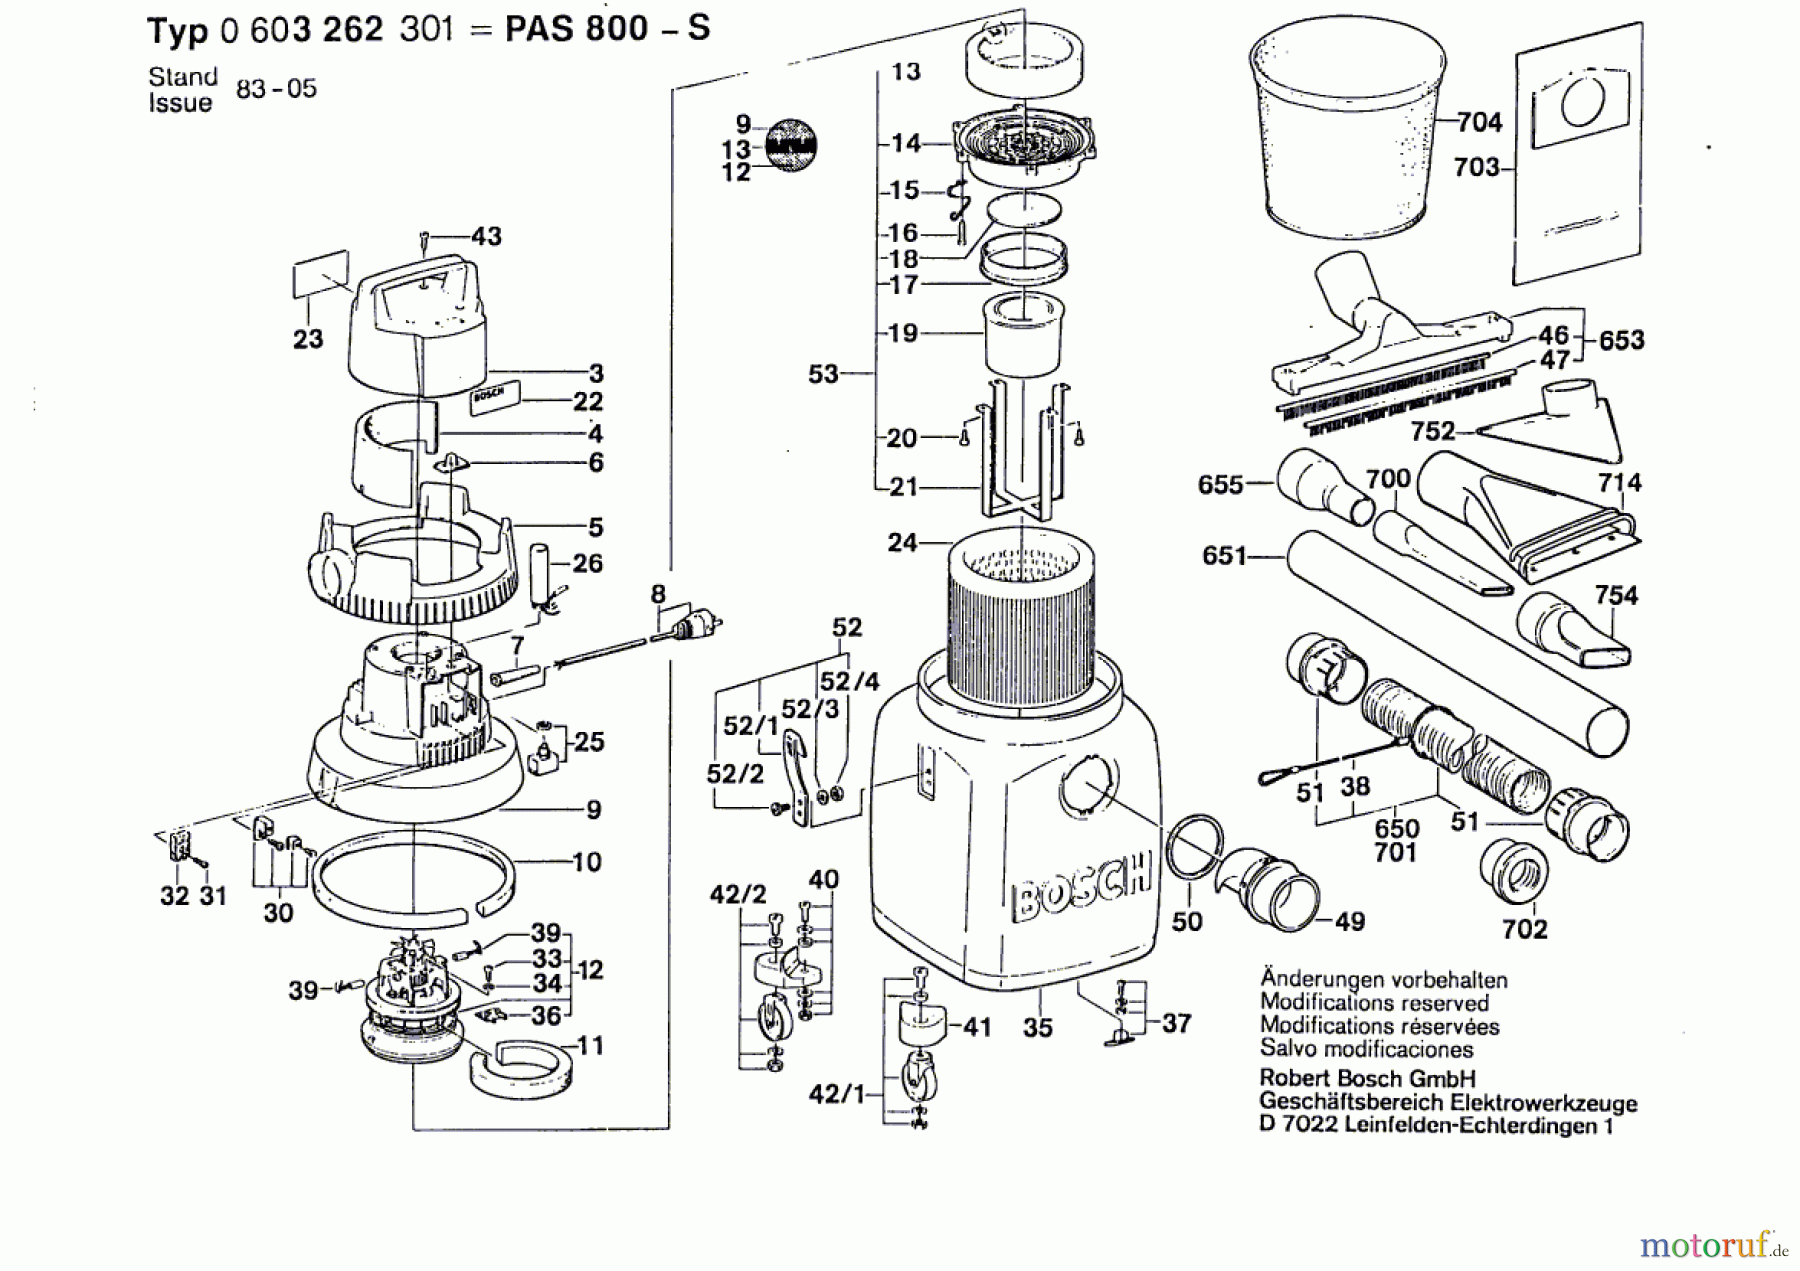  Bosch Werkzeug Hw-Allzwecksauger PAS 800-S Seite 1